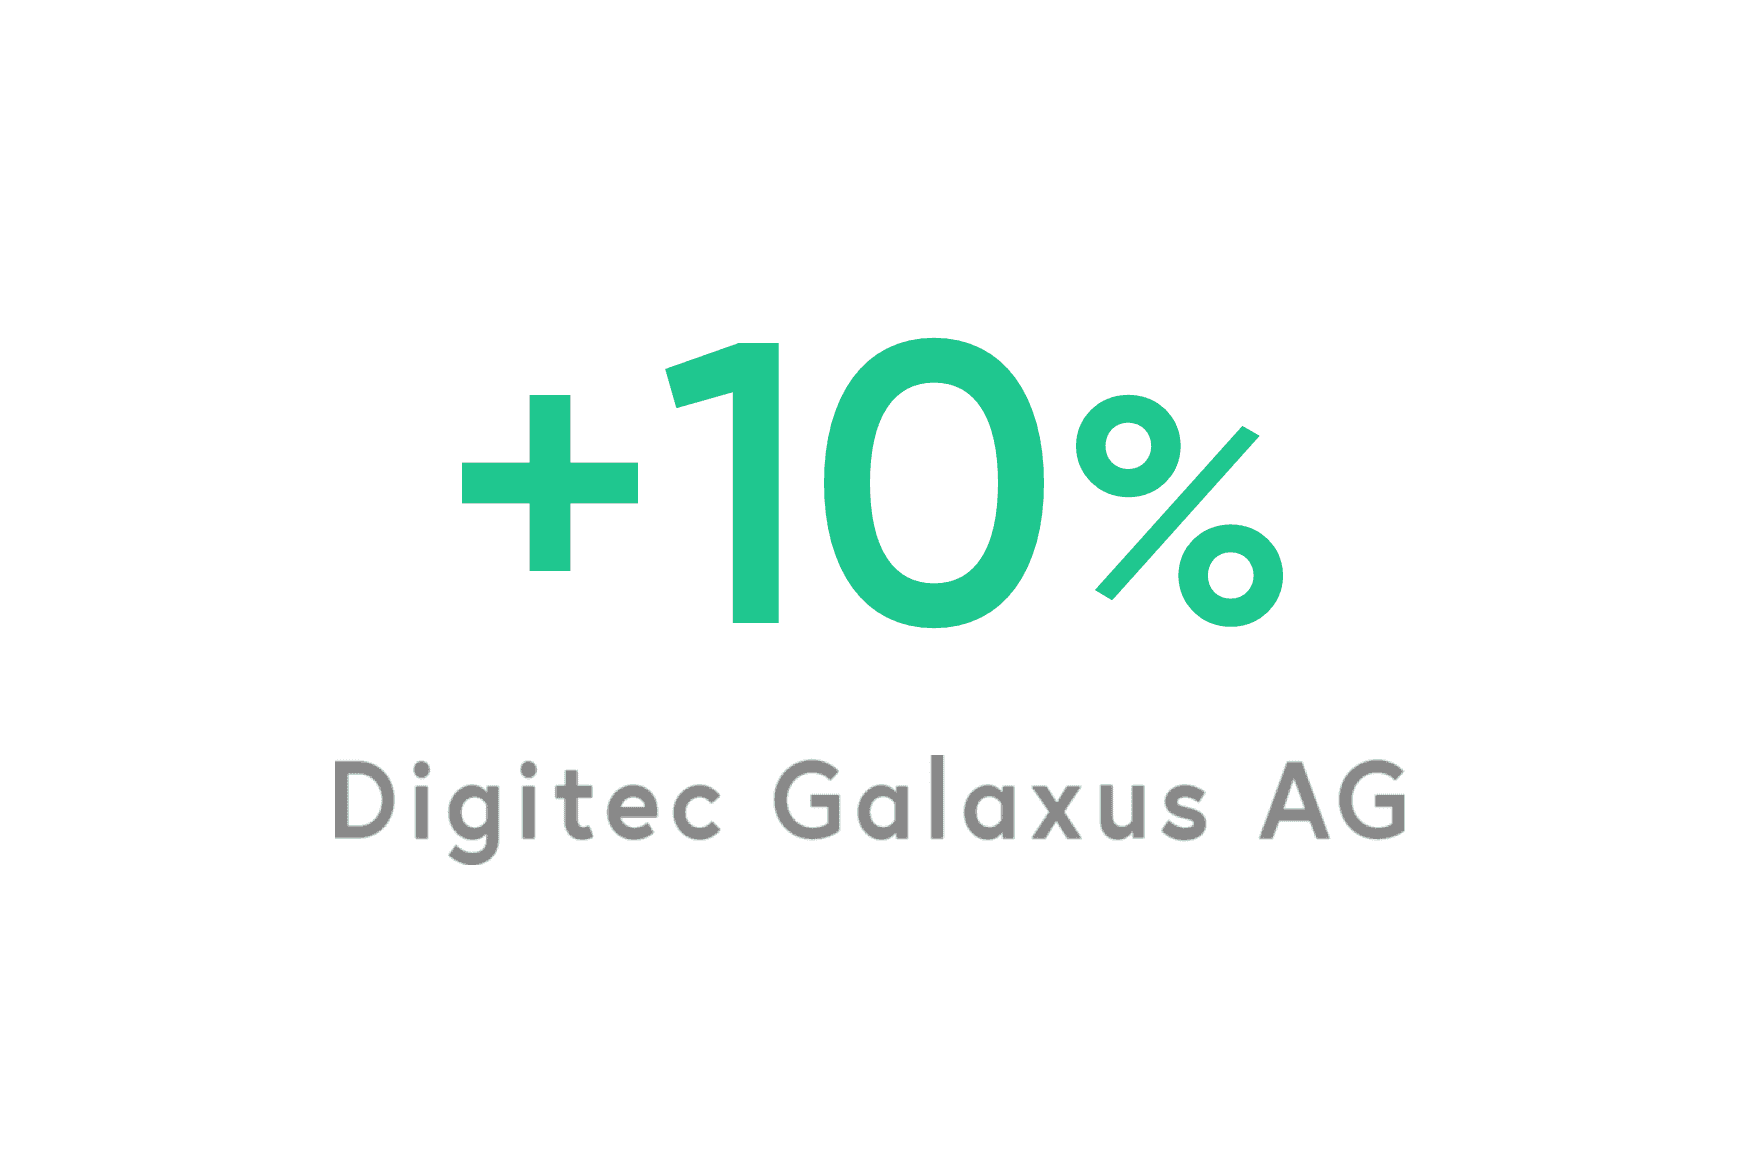 Digitec Galaxus: 10% improvement in agent morale